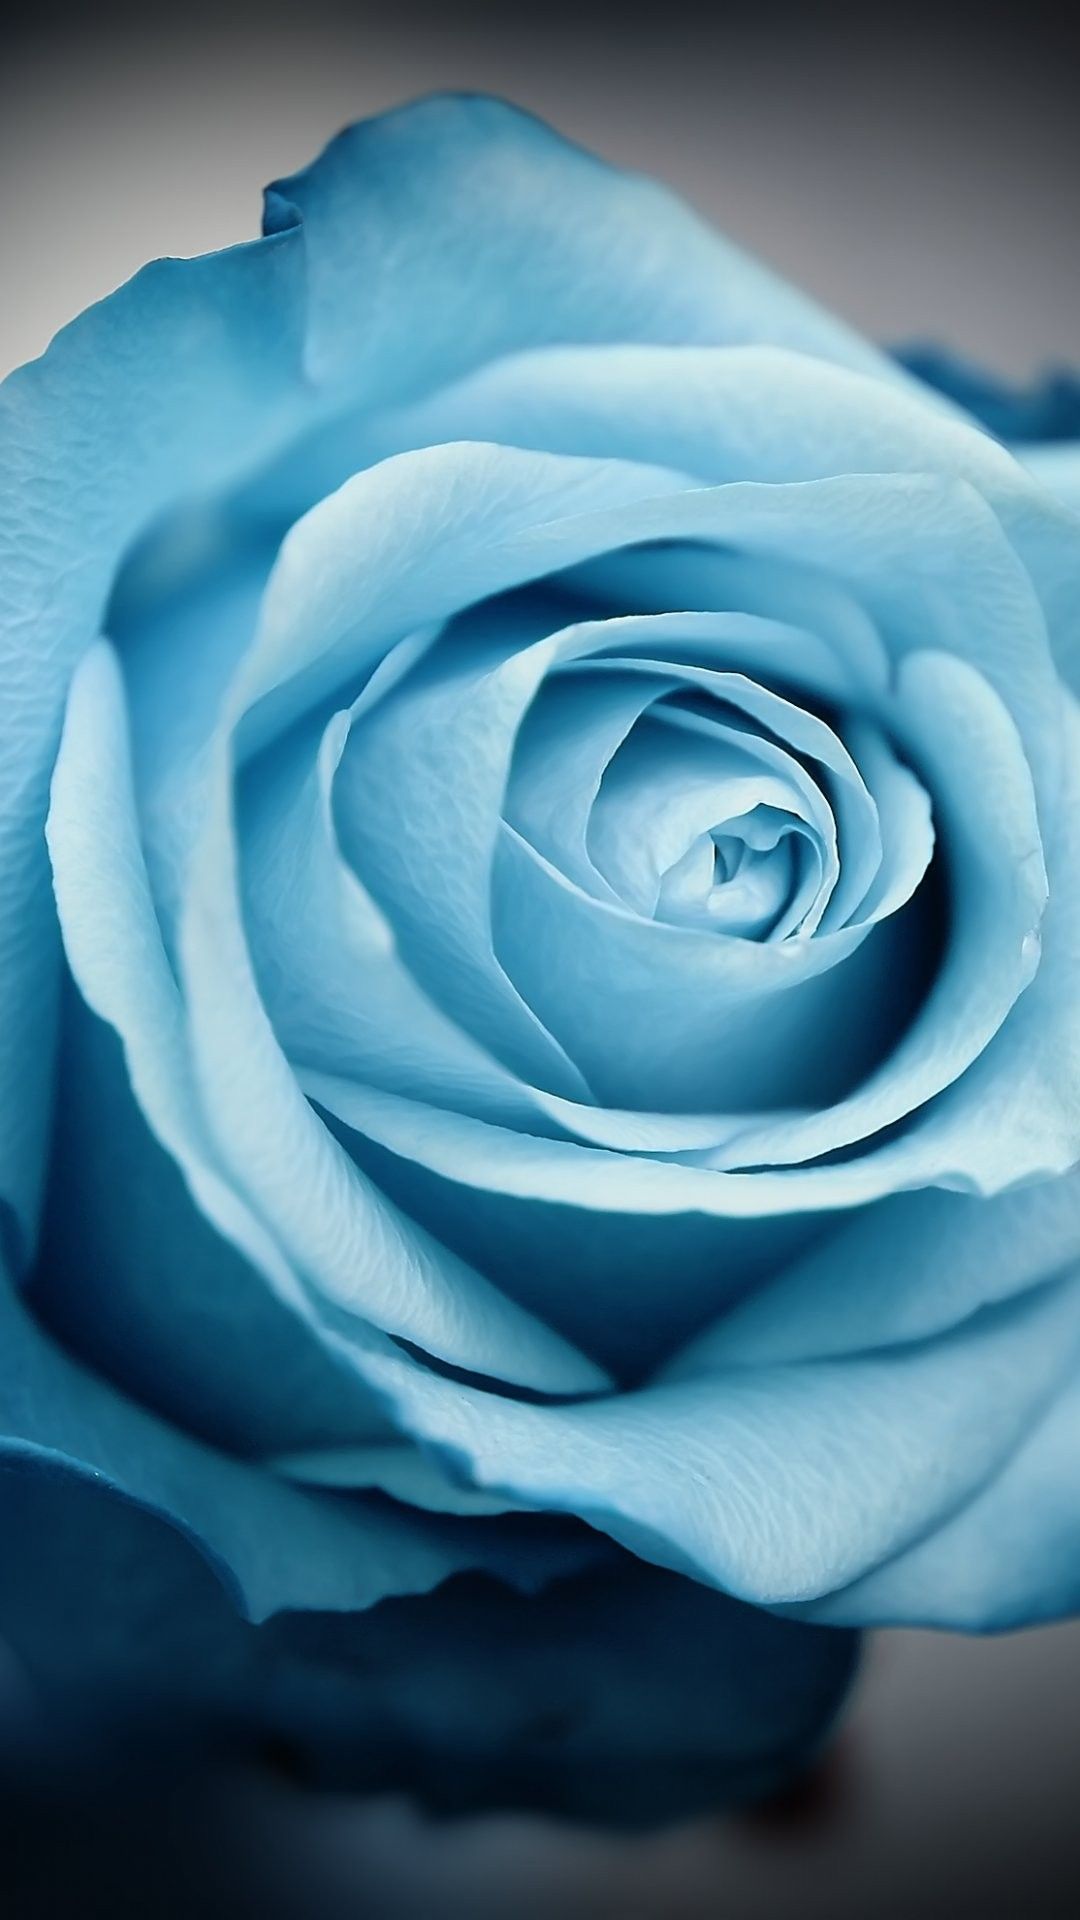 bonitos fondos de pantalla para iphone 6,rosa,azul,flor,rosas de jardín,pétalo